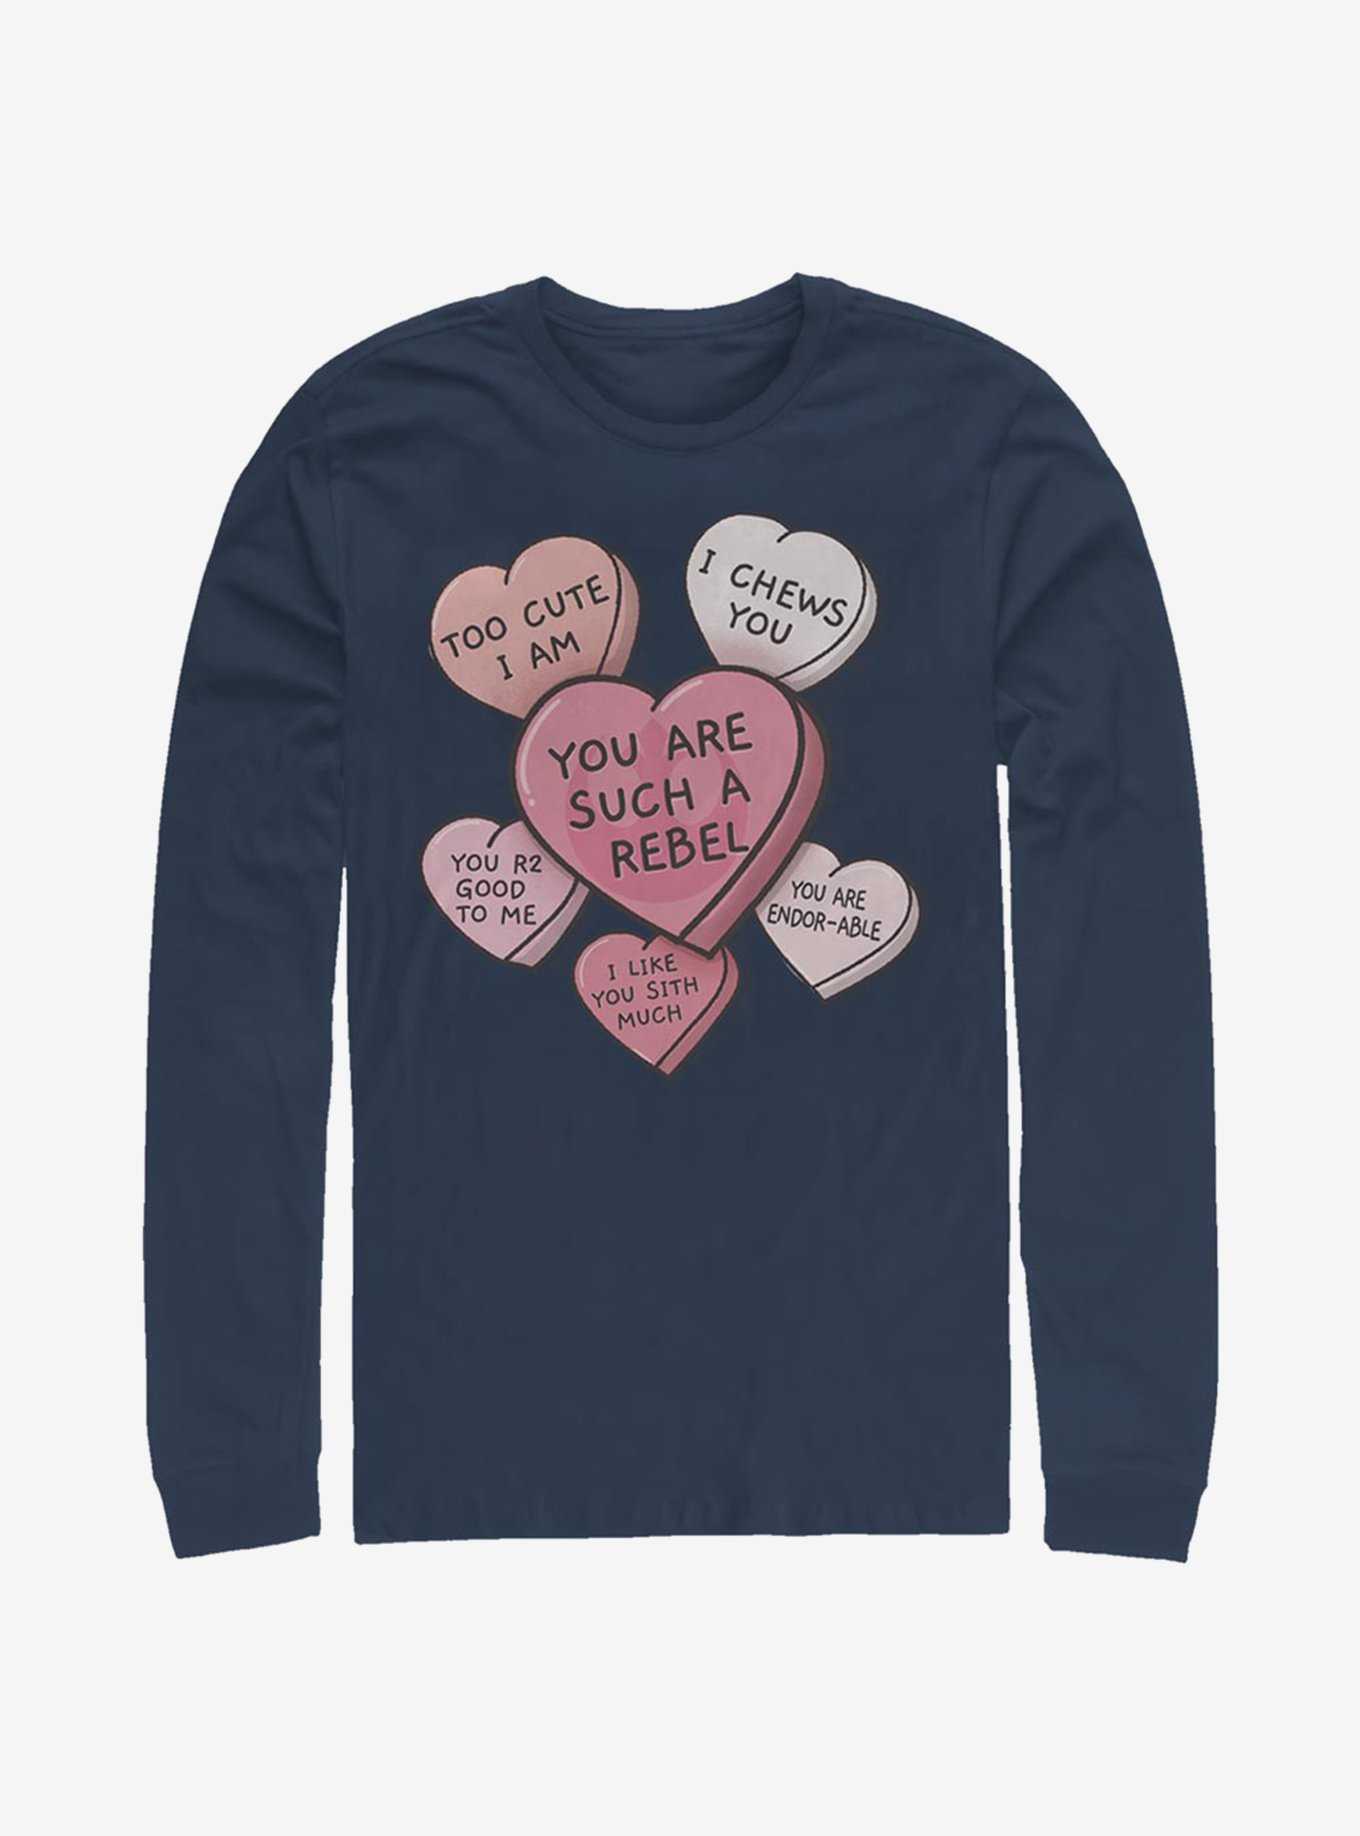 Star Wars Candy Hearts Long-Sleeve T-Shirt, , hi-res